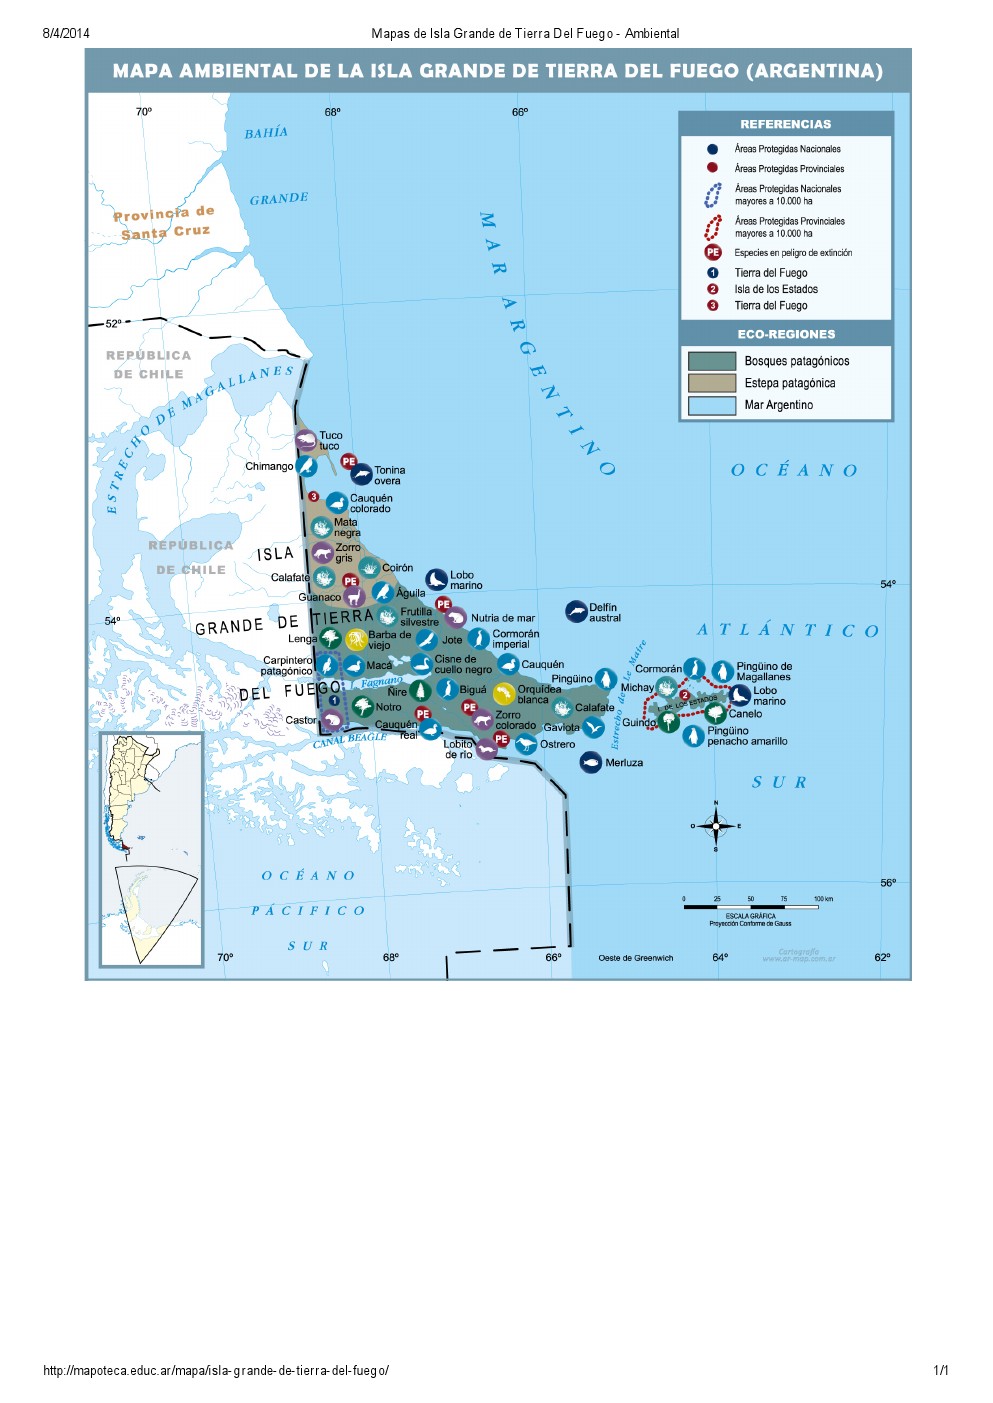 Mapa ambiental de Isla Grande de Tierra del Fuego. Mapoteca de Educ.ar